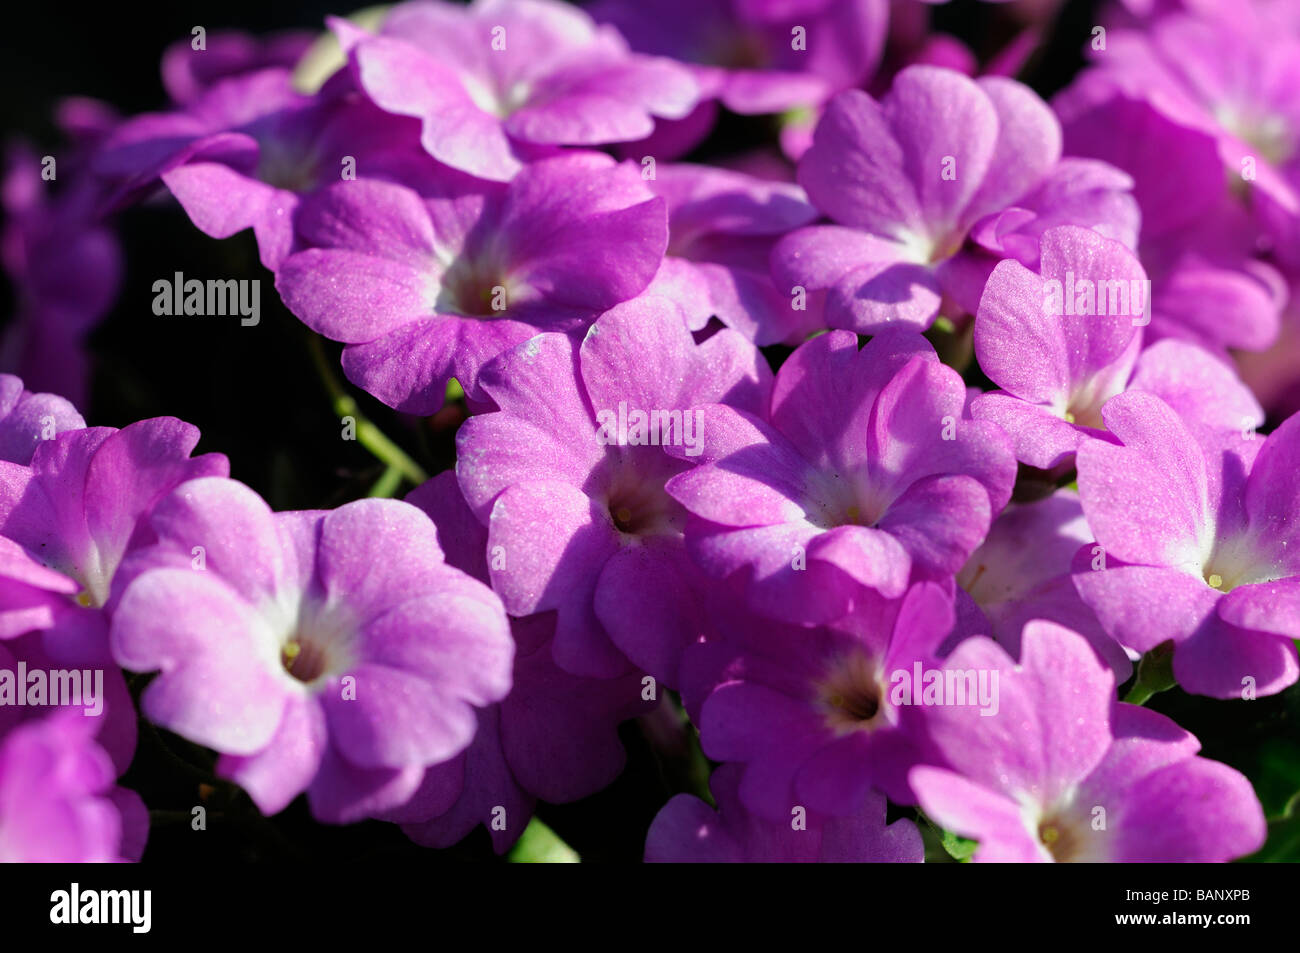 Primula padiglione auricolare primrose fiori viola con pale Yellow eye center Foto Stock